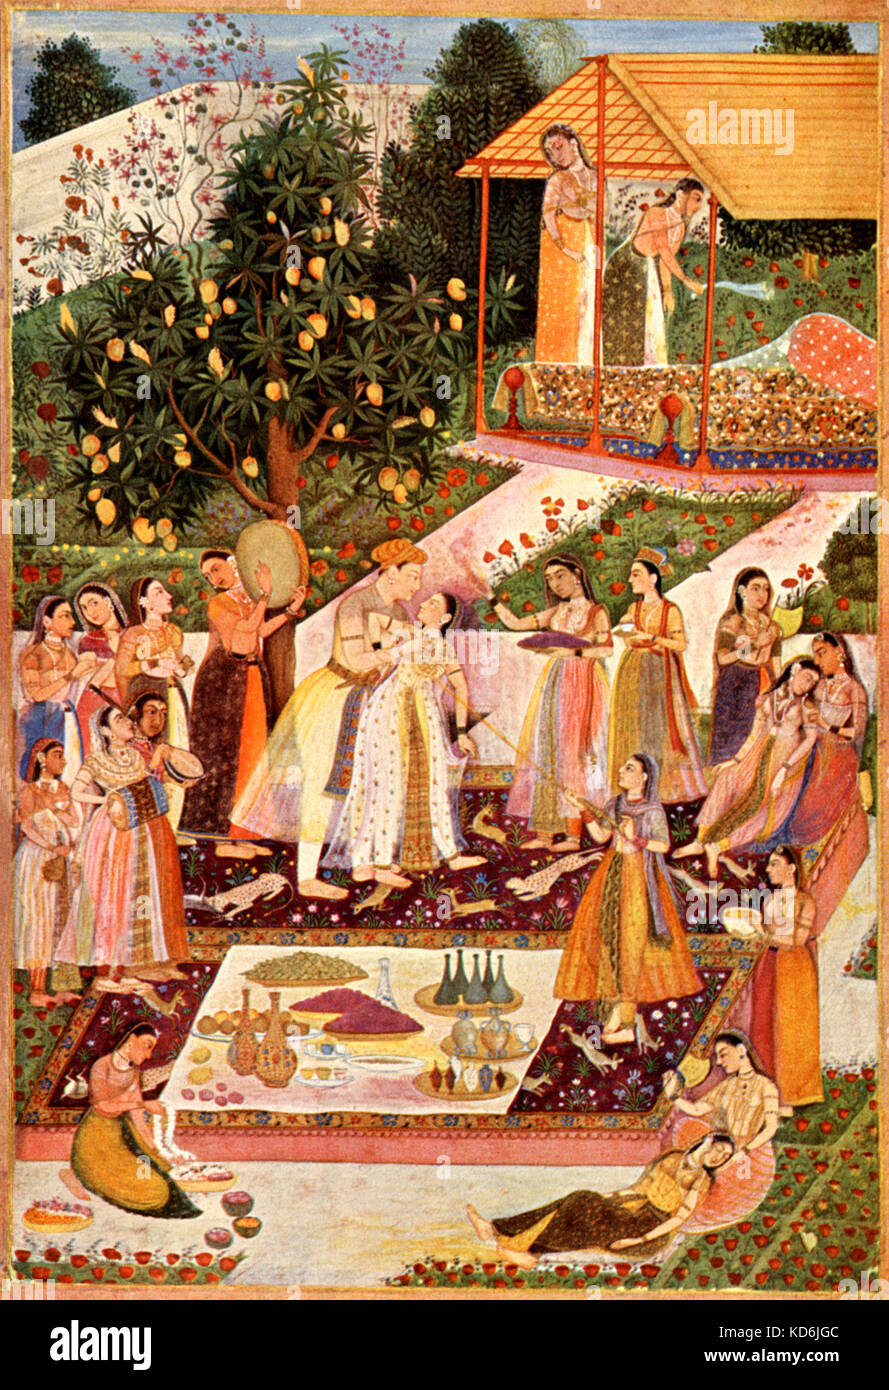 La peinture classique d'un mariage indien à l'extérieur. . Avec les filles à jouer du sitar, tabla et tambour. Bibliothèque nationale, Vienne Banque D'Images